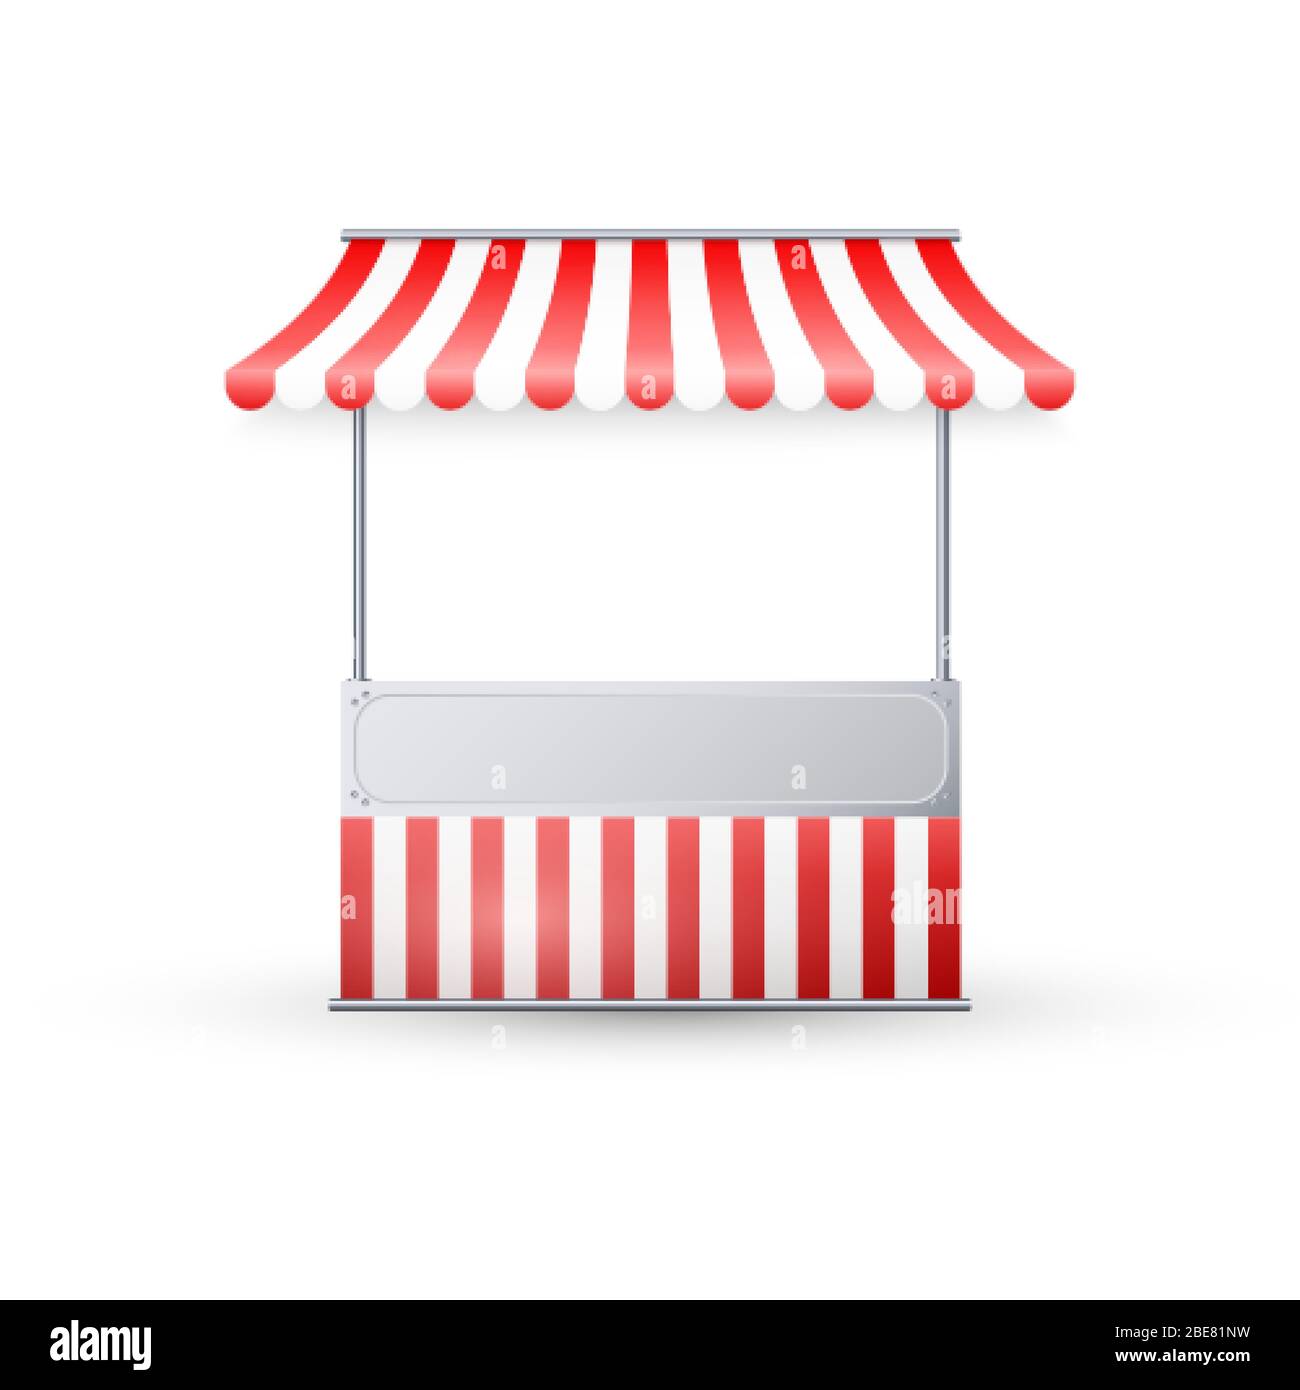 Stallo realistico del mercato vuoto con tenda a strisce rosse e bianche. Template Street trading, stand retail per prodotti alimentari. Illustrazione vettoriale Illustrazione Vettoriale